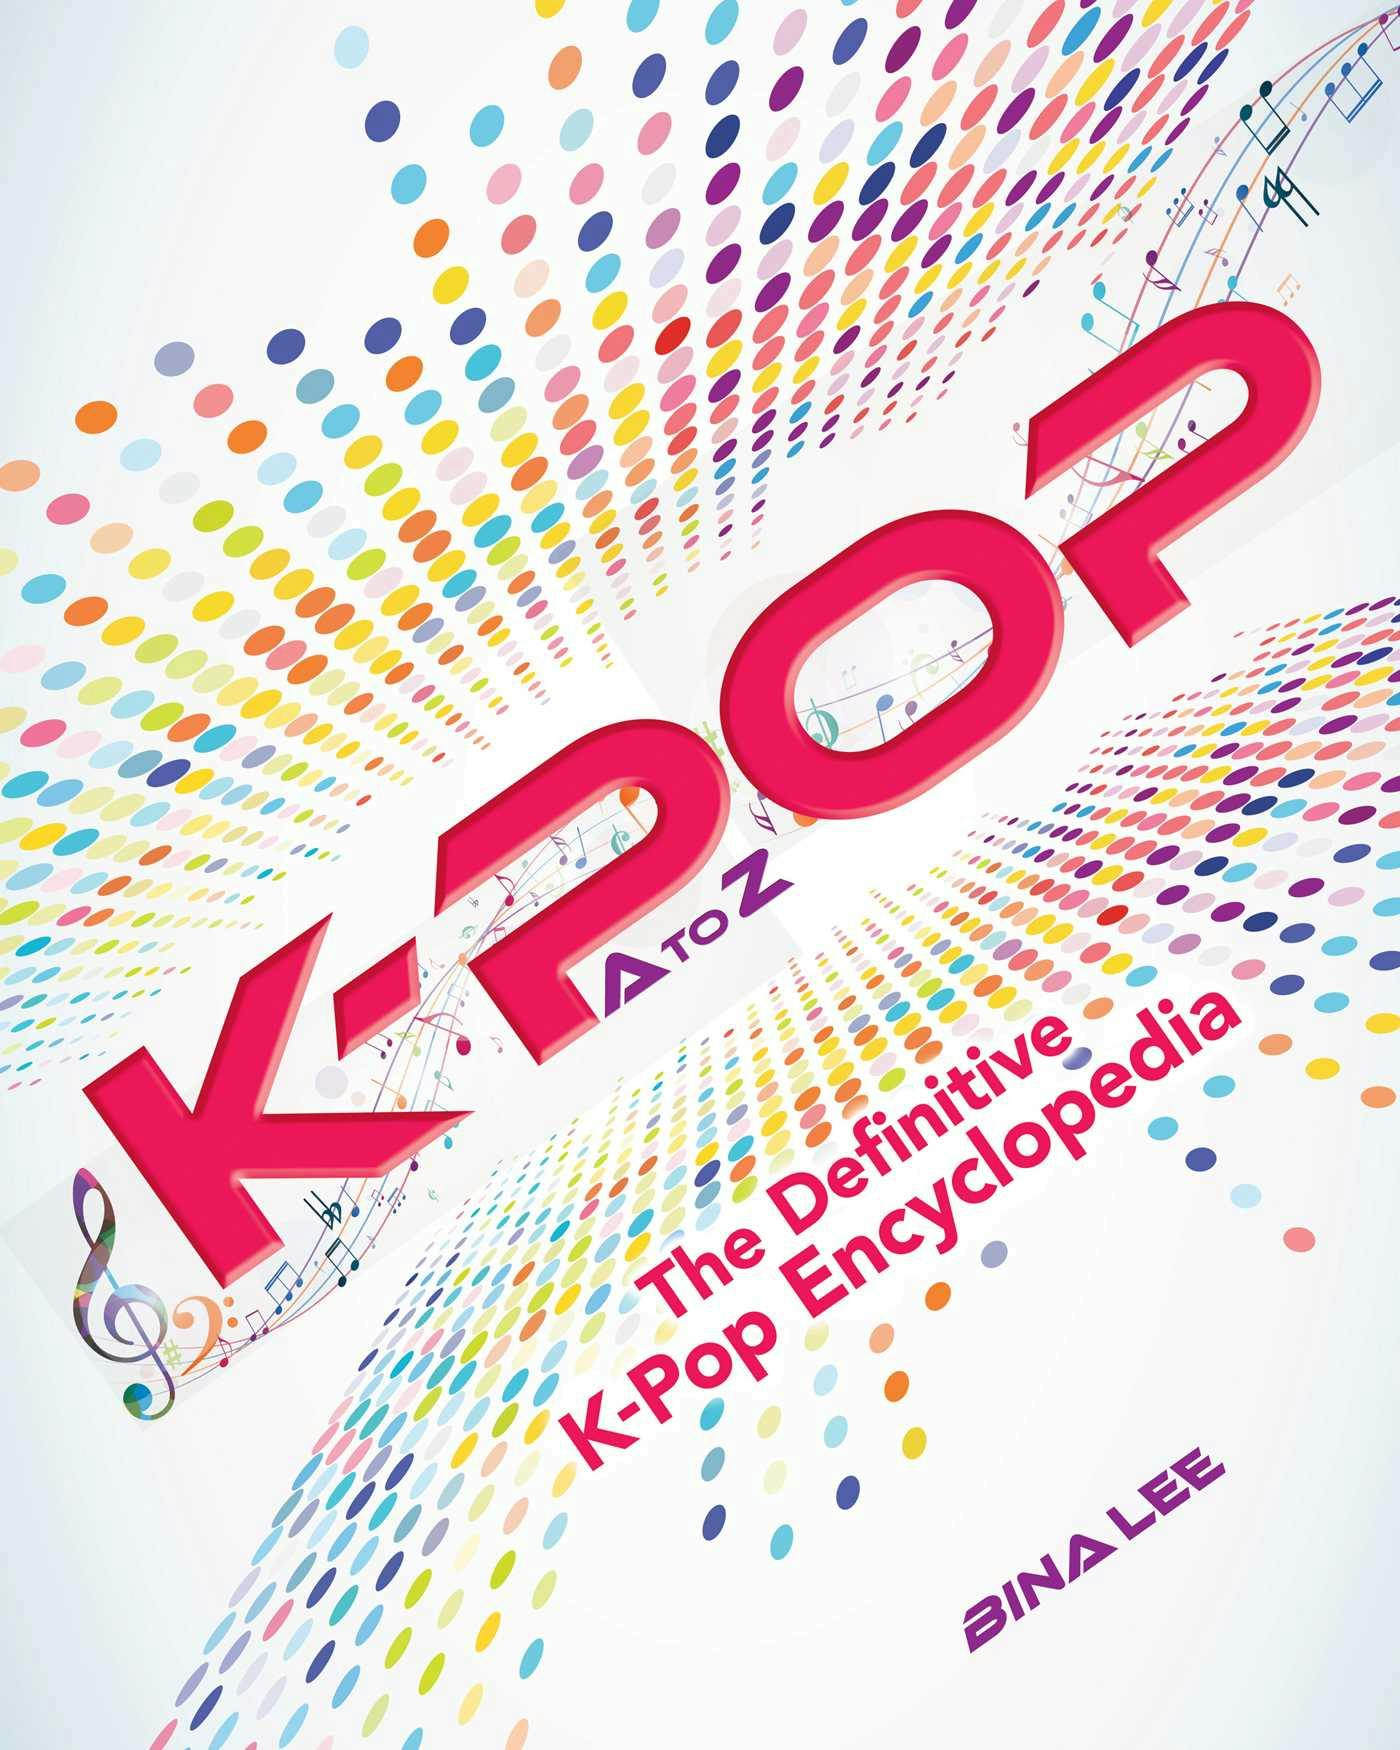 K-POP A To Z: The Definitive K-Pop Encyclopedia - Bina Lee